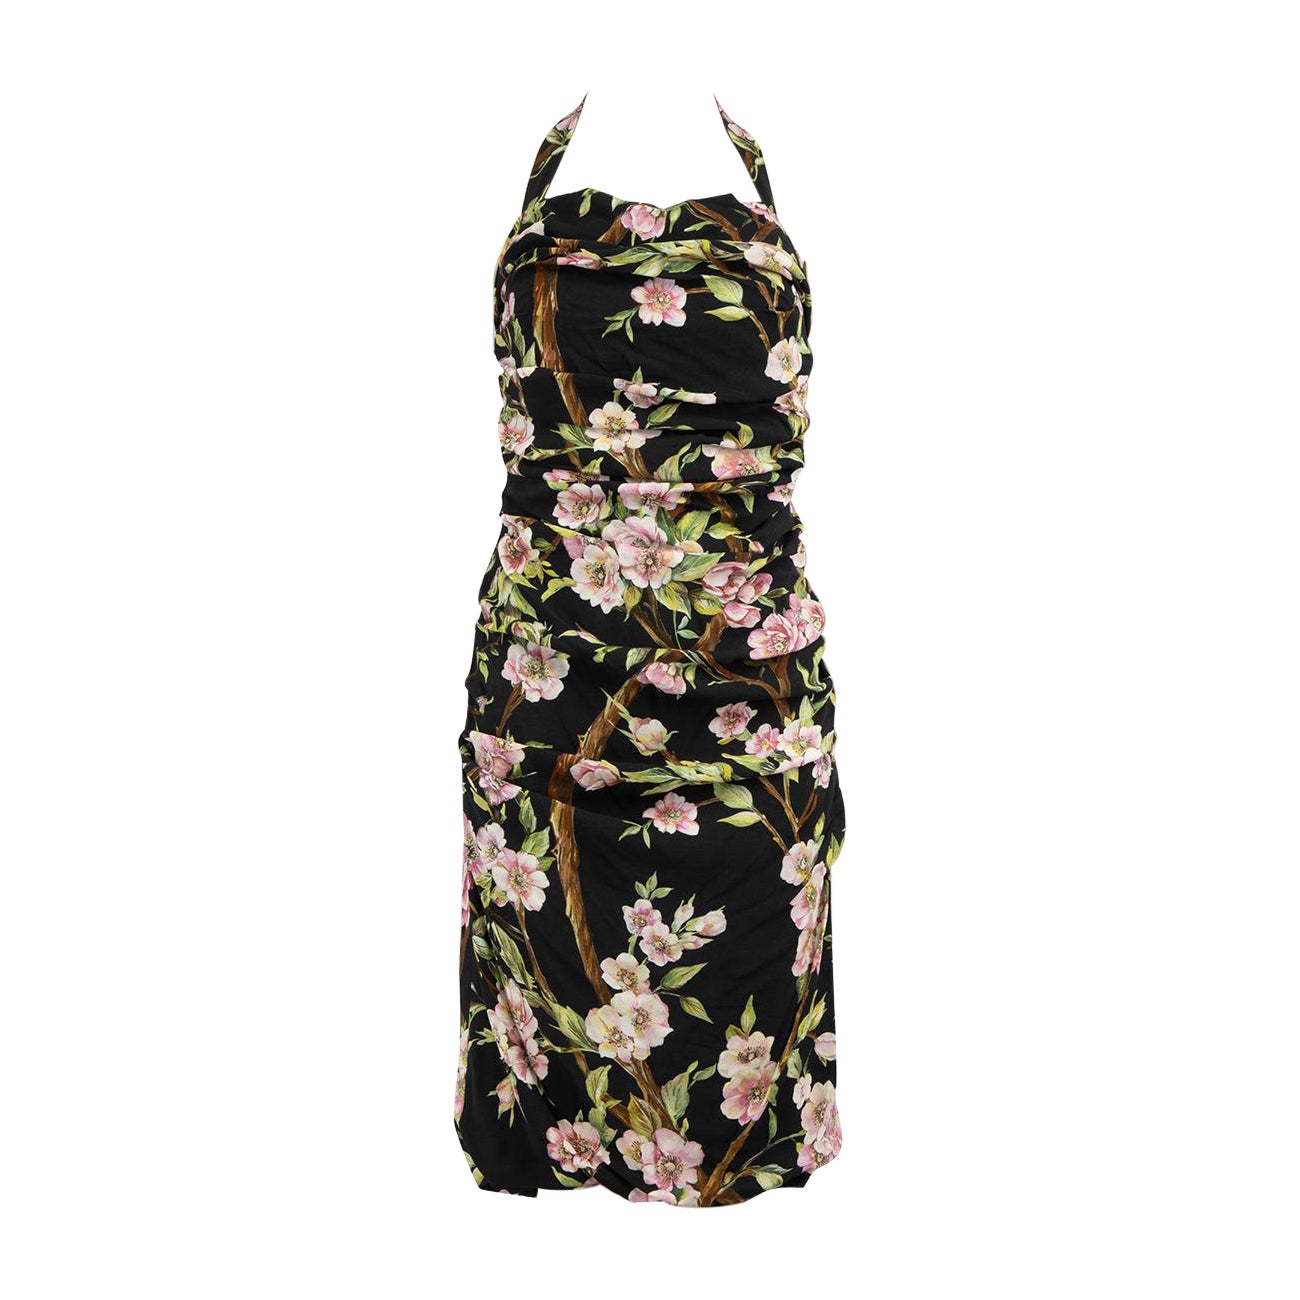 Dolce & Gabbana Black Floral Halterneck Dress Size M For Sale